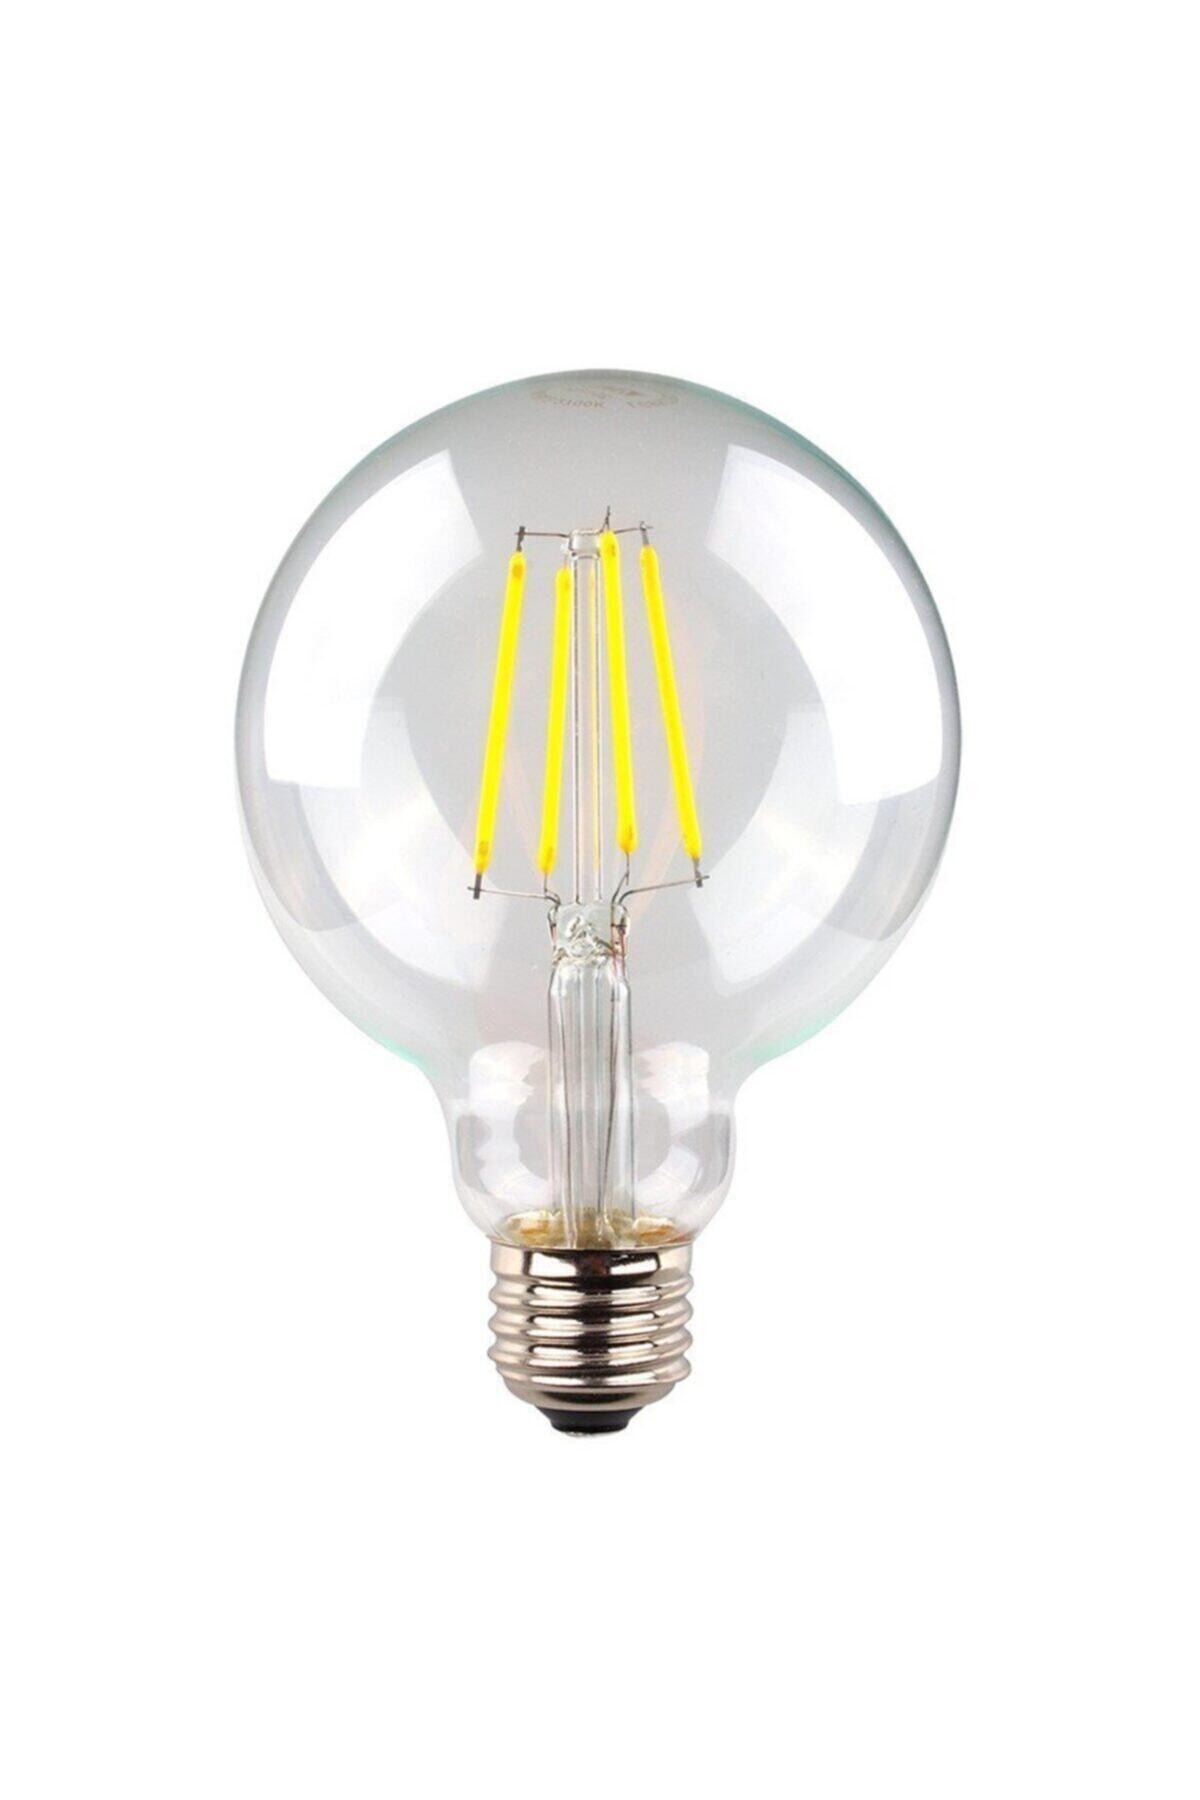 toplamak Ciro Claire  Heka G95 Filament Edison Tip Rustik Ampul 6 Watt Led Ampul - Beyaz Işık  Fiyatı, Yorumları - TRENDYOL